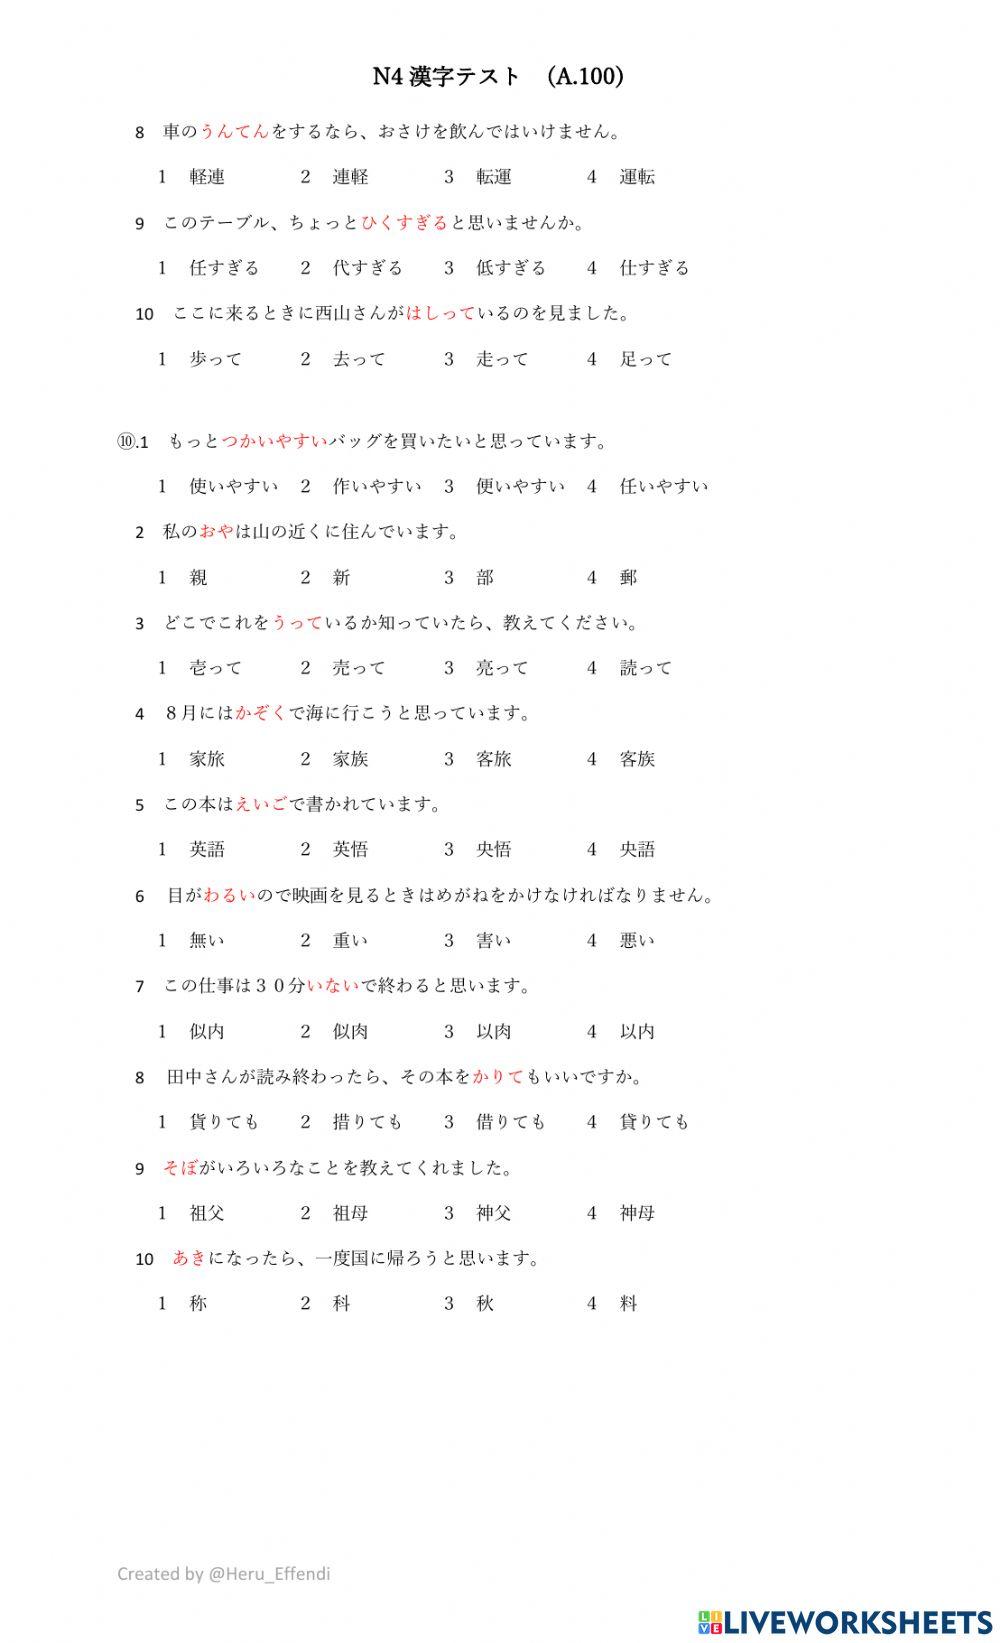 Soal kanji N4 (A.100)